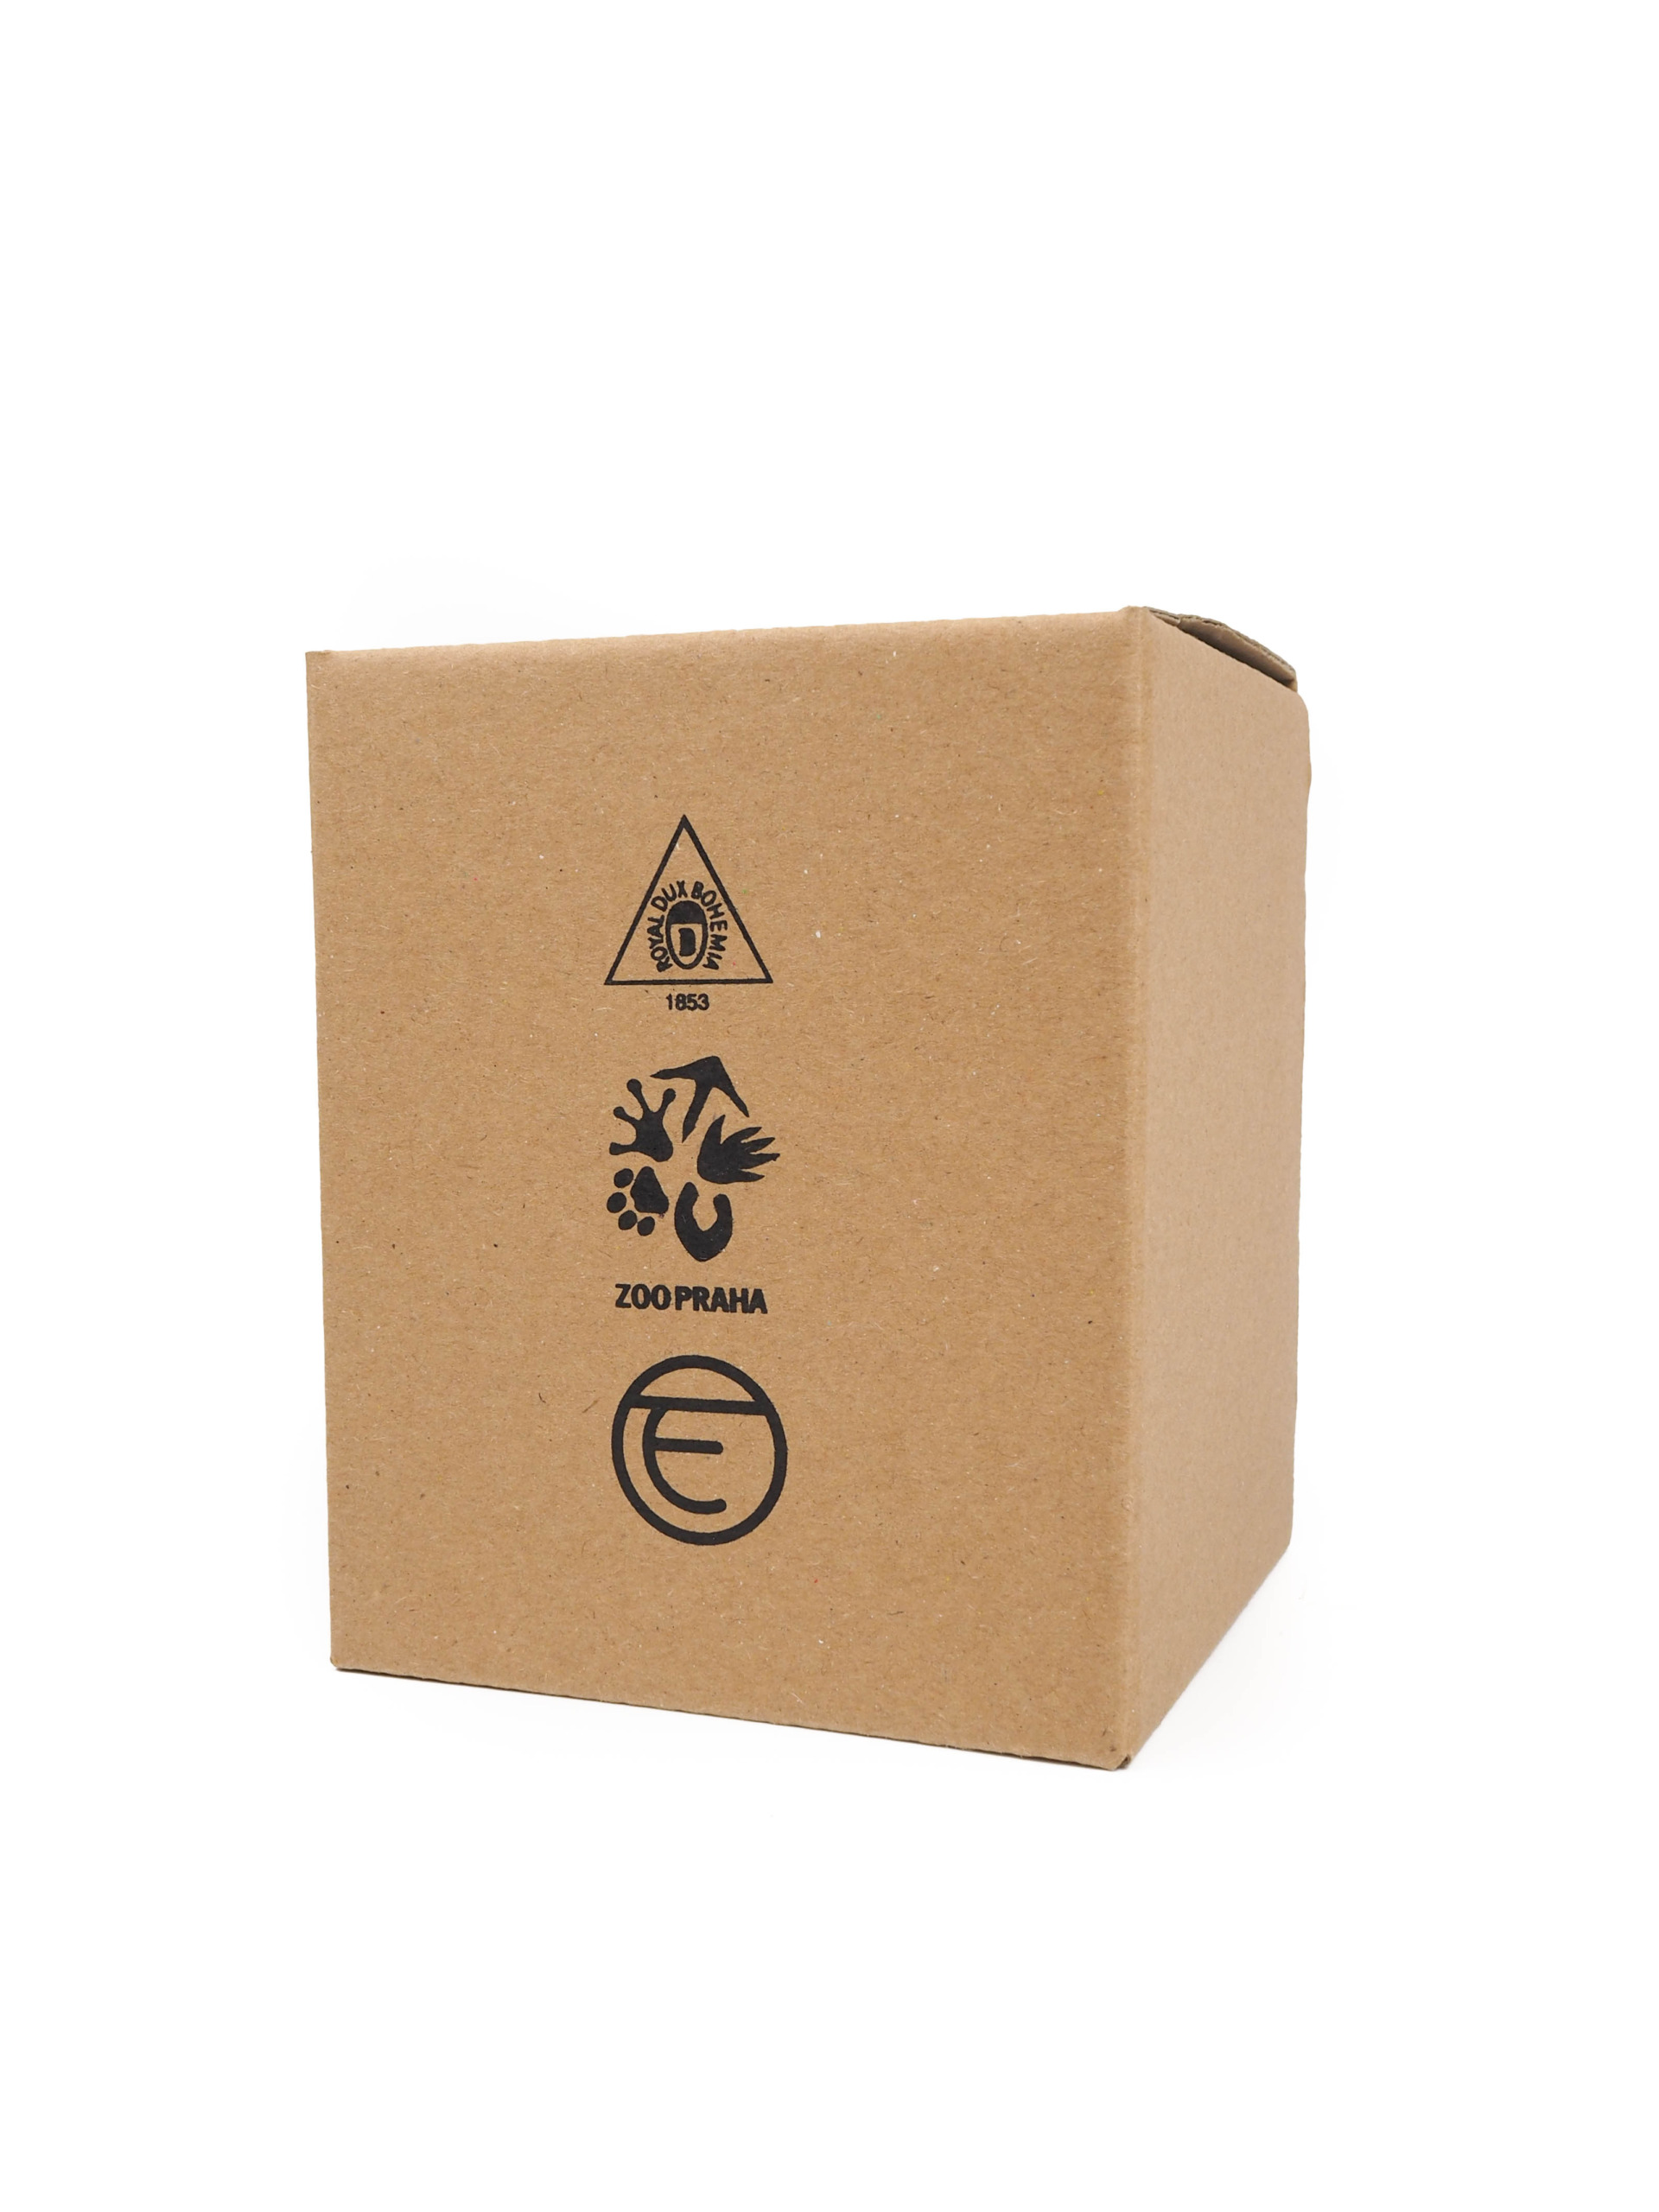 Dárková krabička byla vyrobena na zakázku k vložení porcelánové gorily. Krabička je s klopovým otevíráním ze shora a potištěna logem.